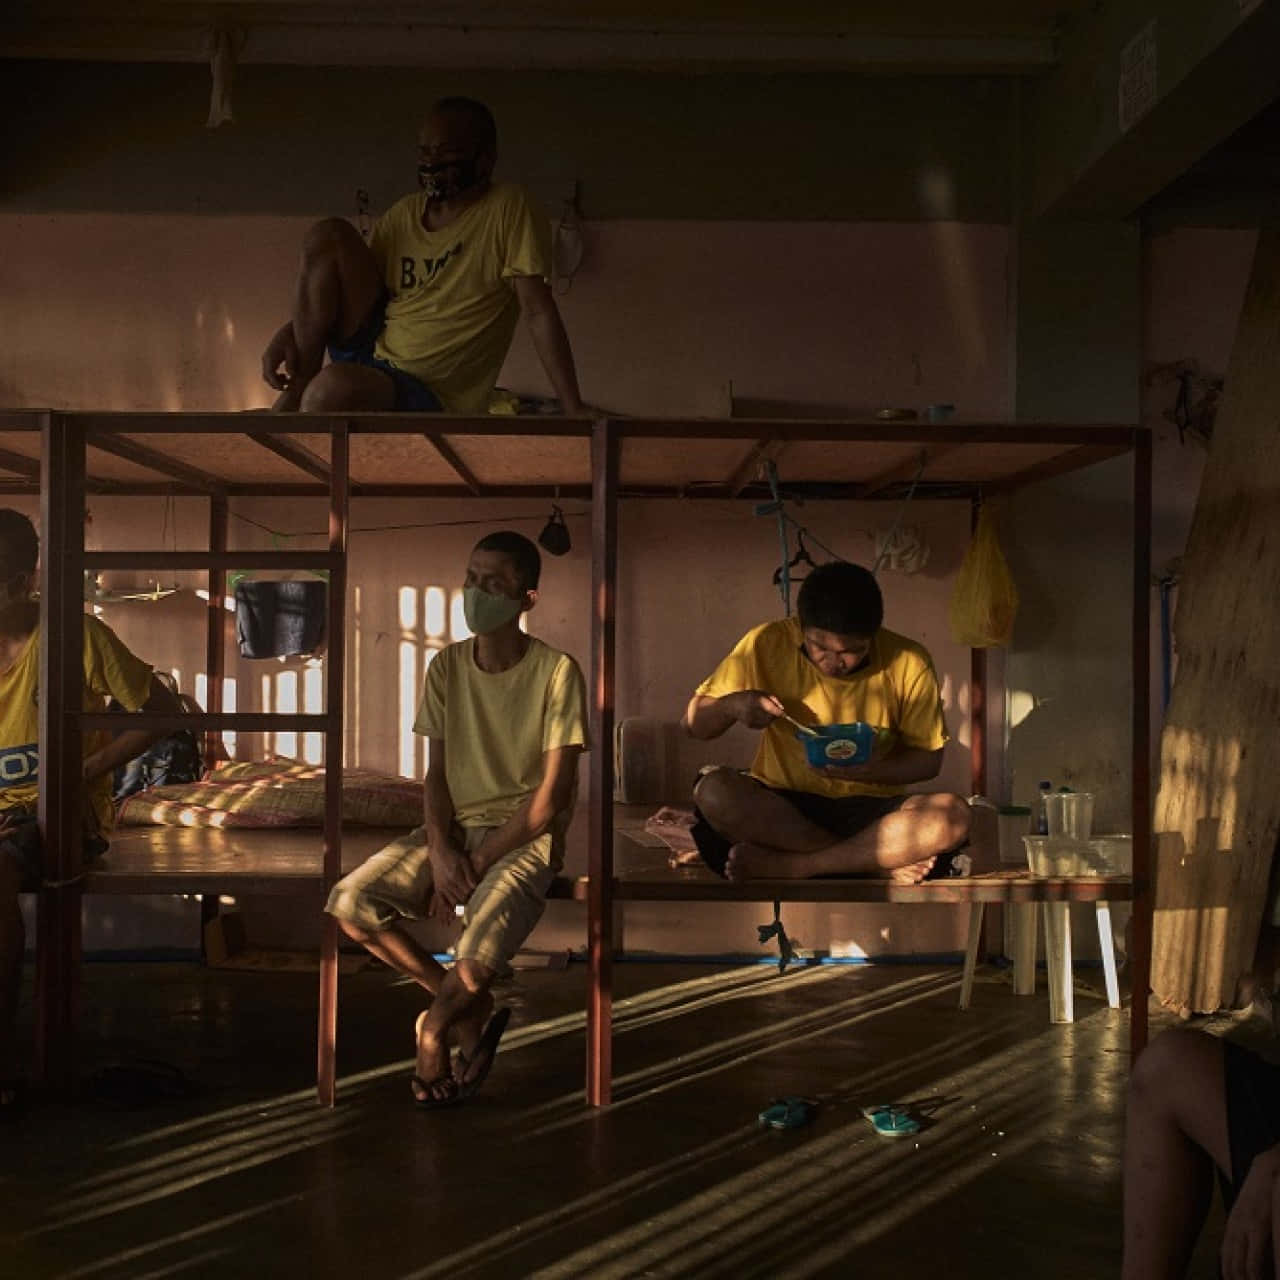 Imagende Presos En La Cárcel Vistiendo Camisas Amarillas.